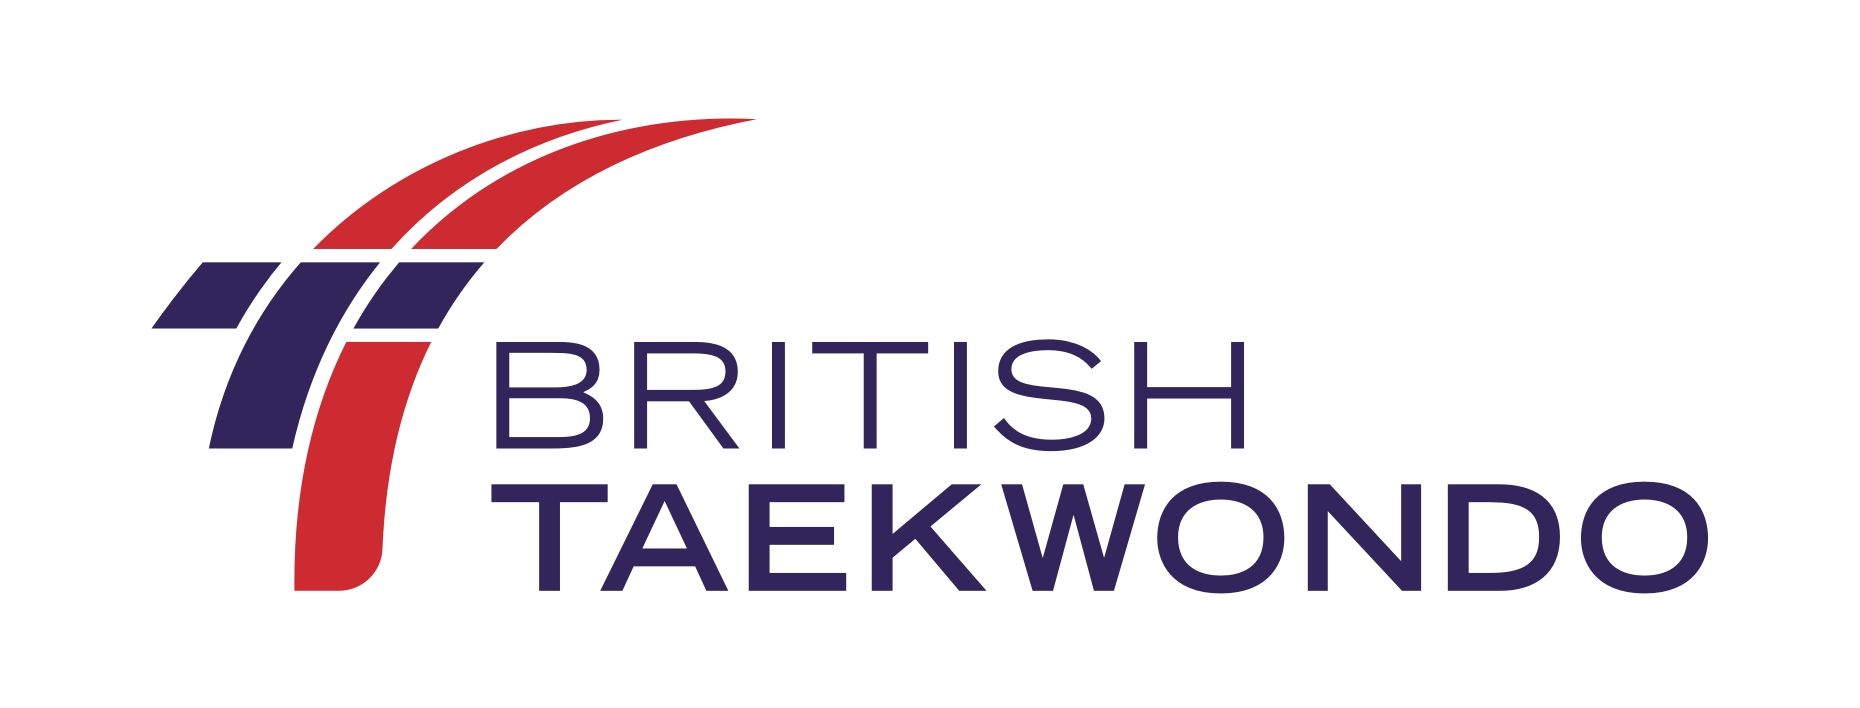 British Taekwondo logo